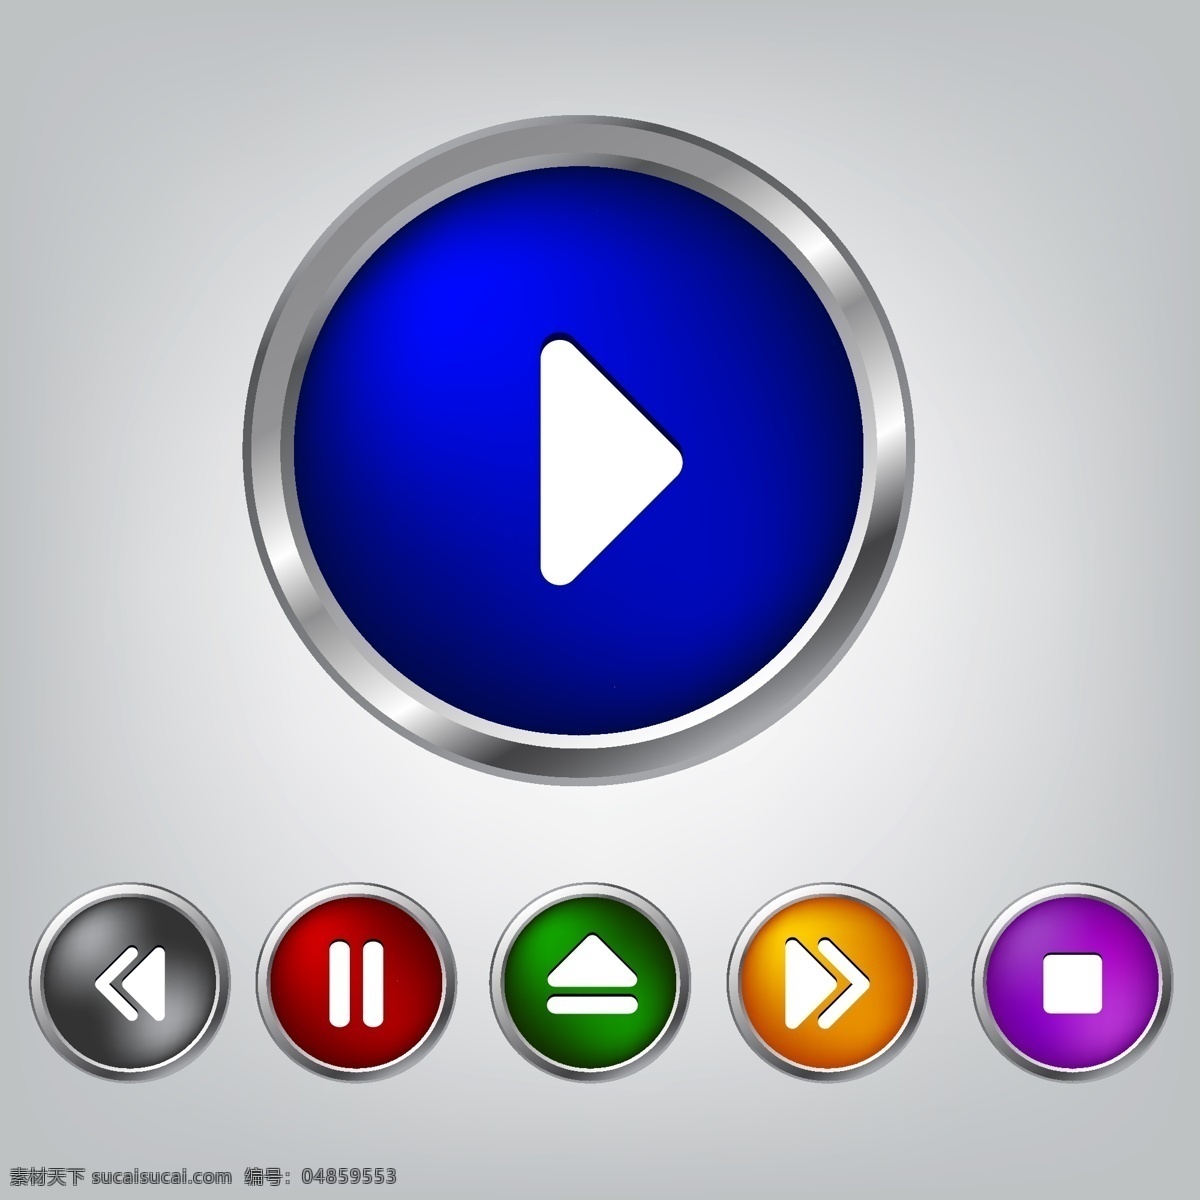 媒体播放器 按钮 闪亮 播放器 圈 媒体 设置 播放器按钮 按钮集 multicolors 数字